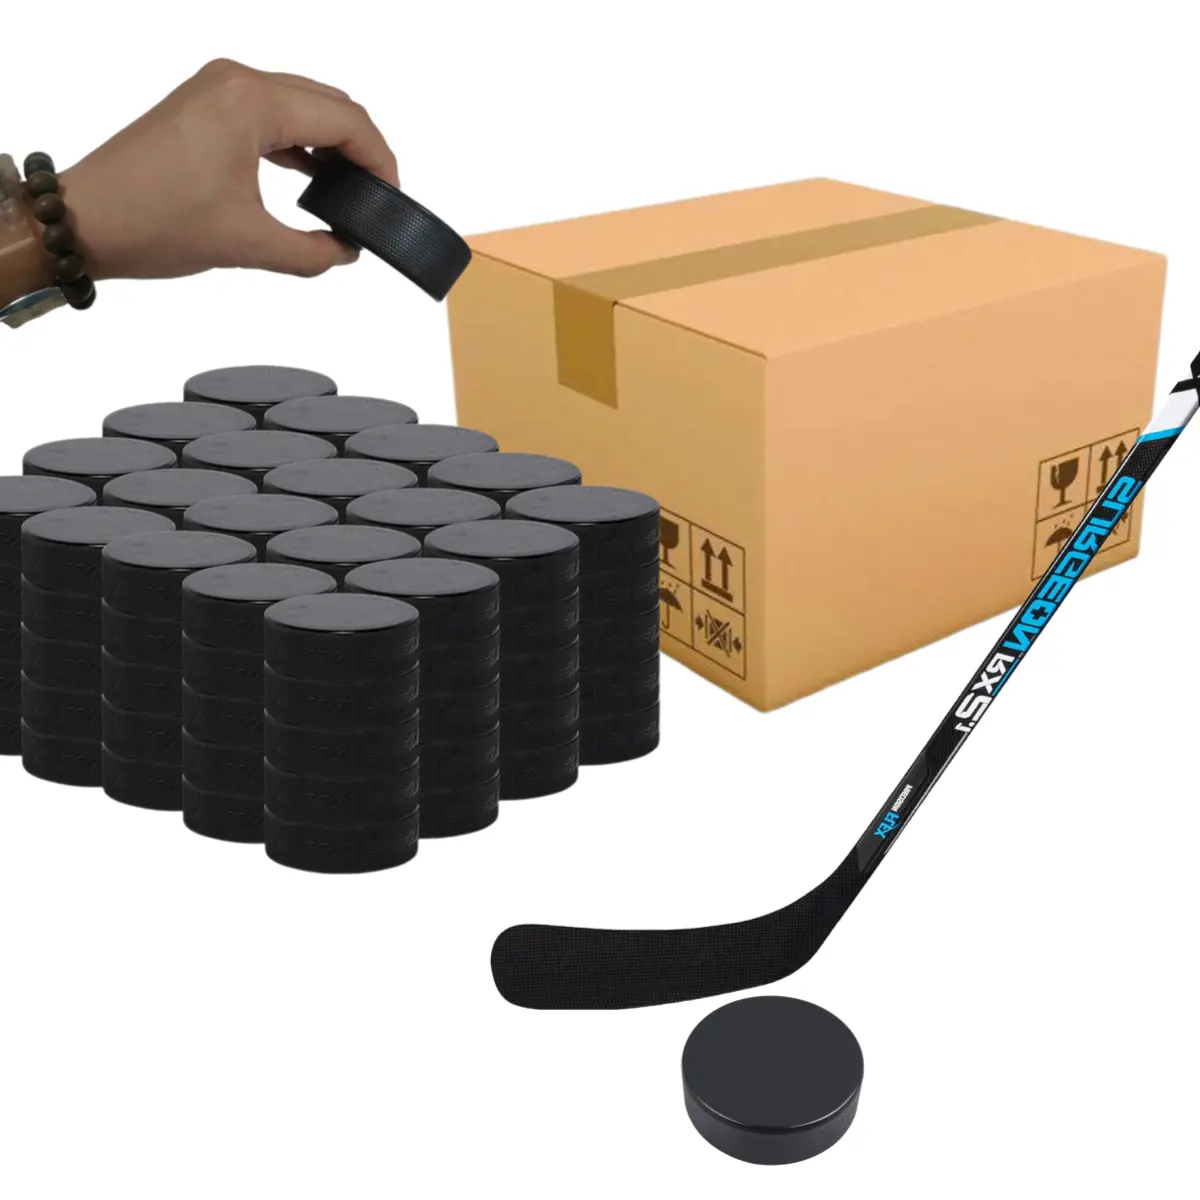 Оптовая цена, популярные высококачественные шайбы для хоккея с шайбой с индивидуальным логотипом или пустые тренировочные резиновые шайбы для хоккея с шайбой